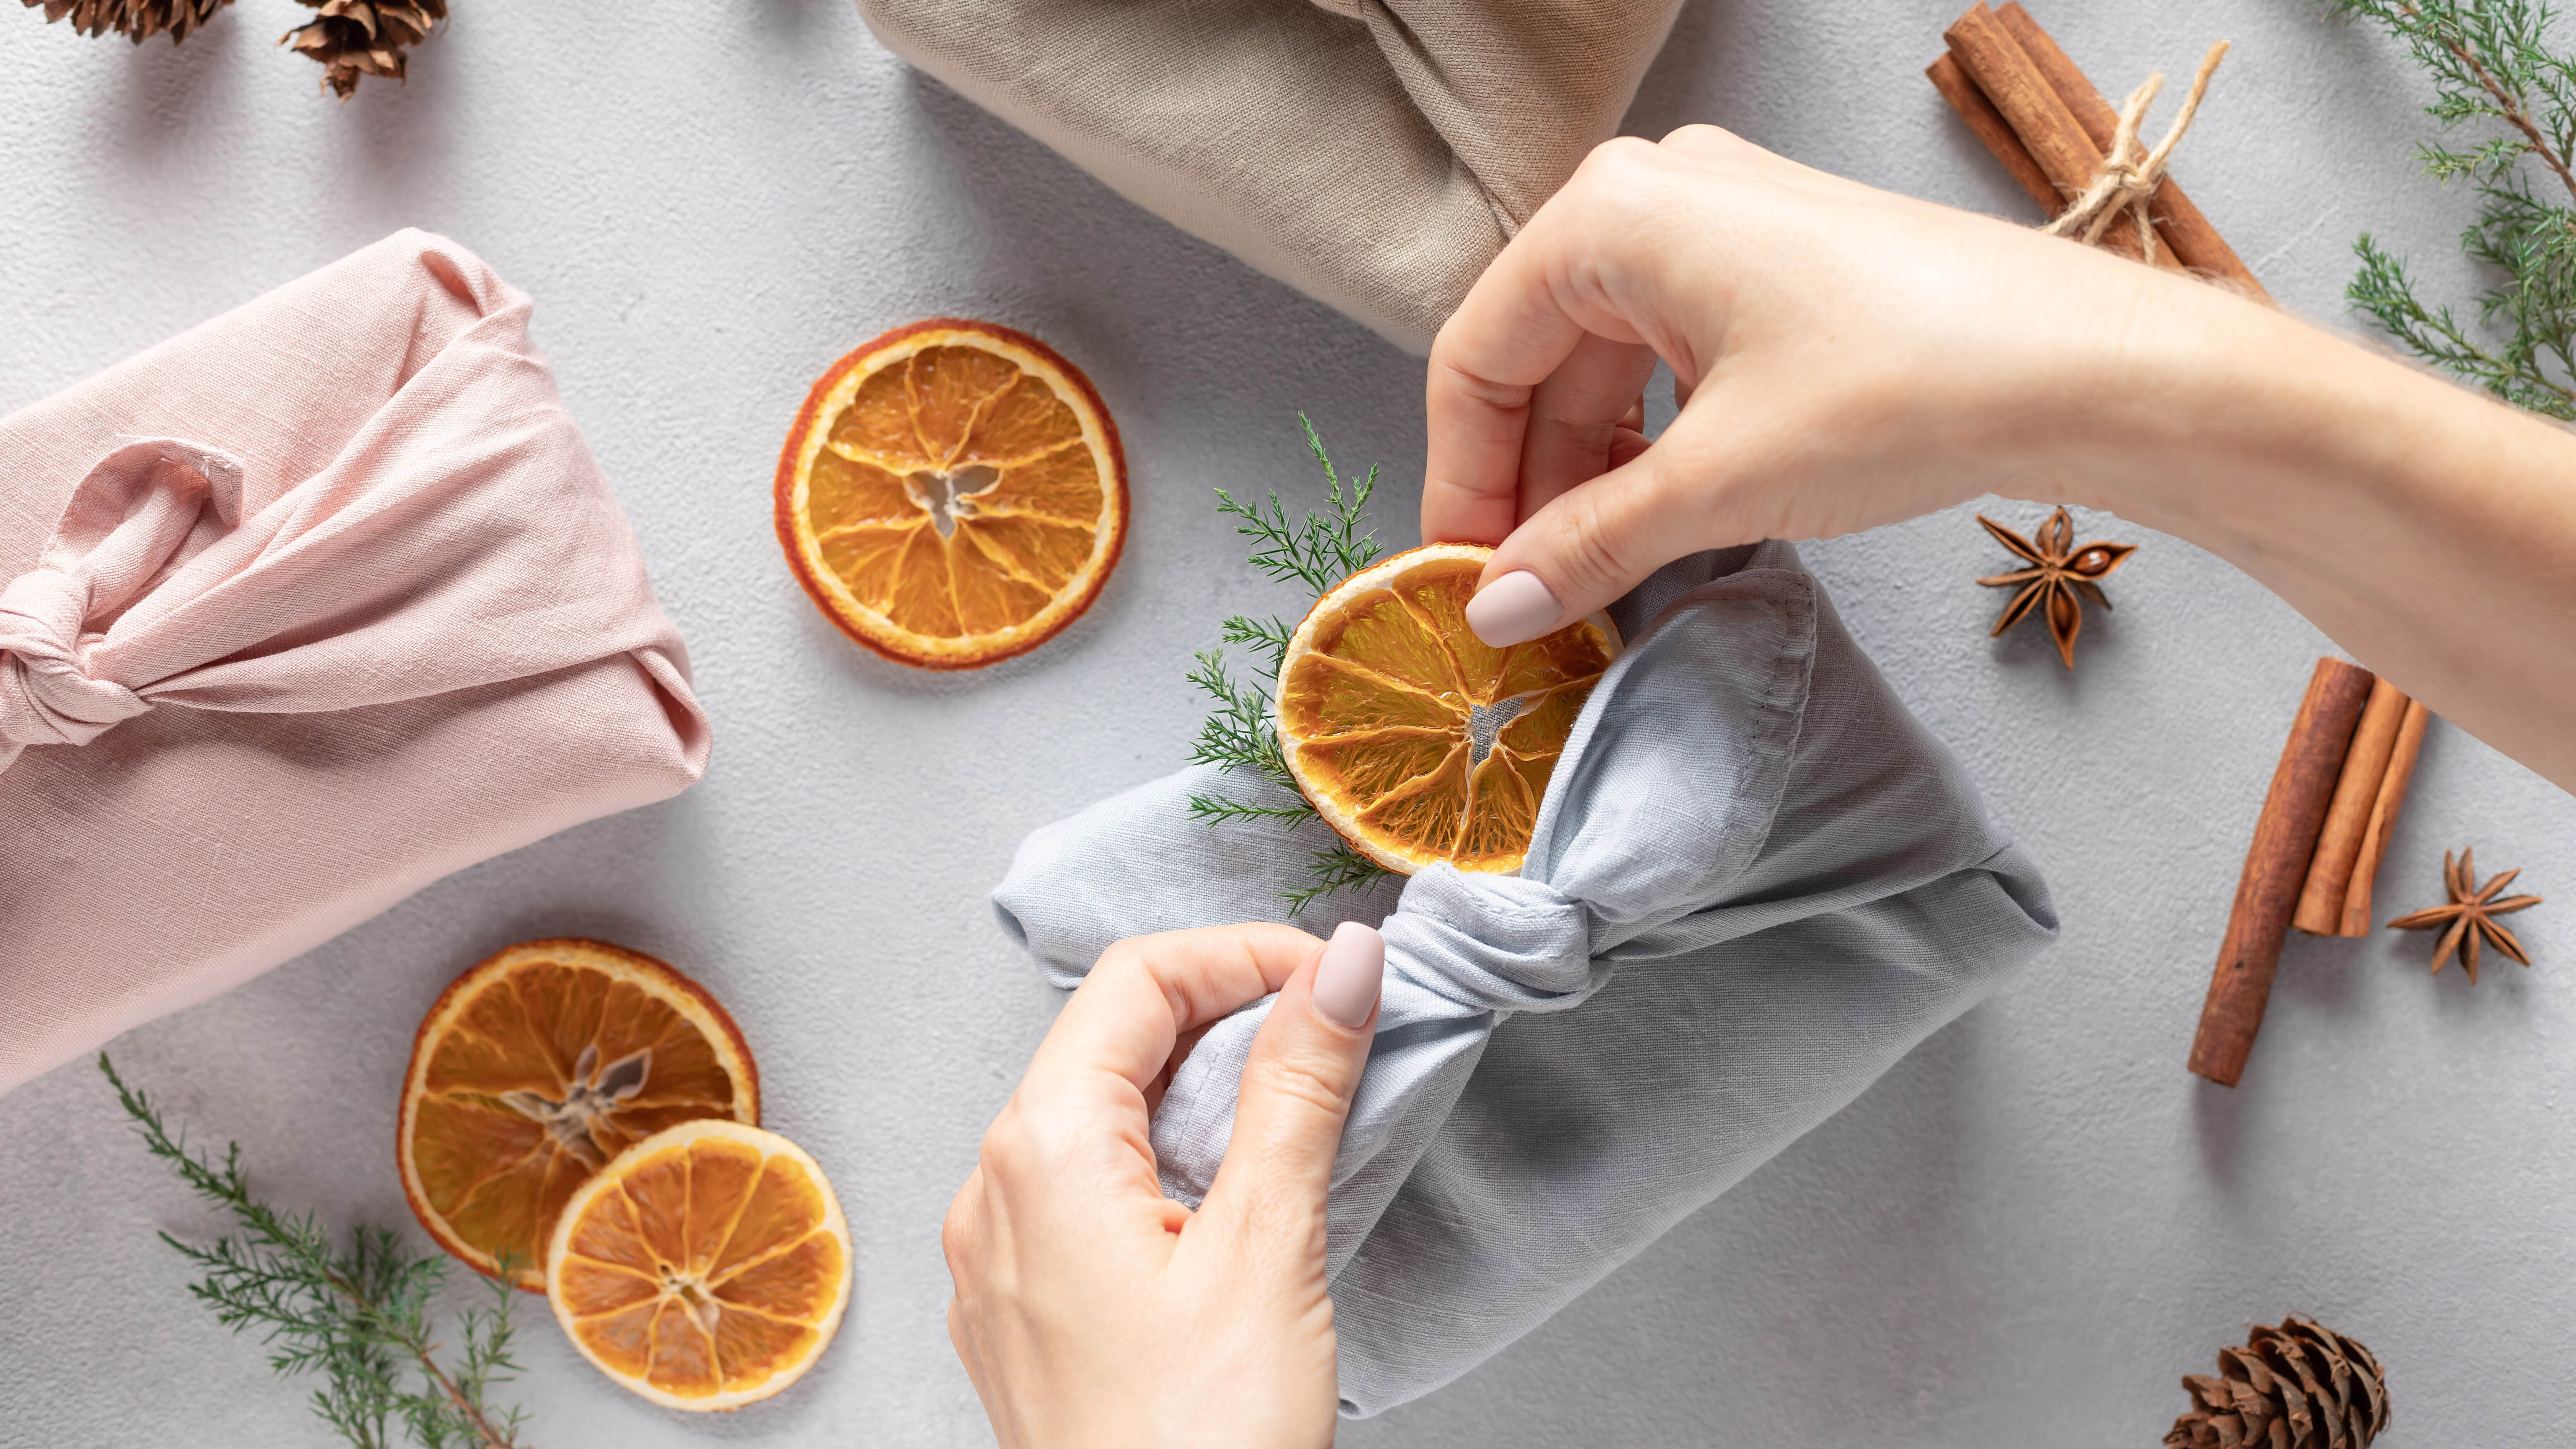 Женщина добавляет сушеный ломтик апельсина к подарку, завернутому в ткань